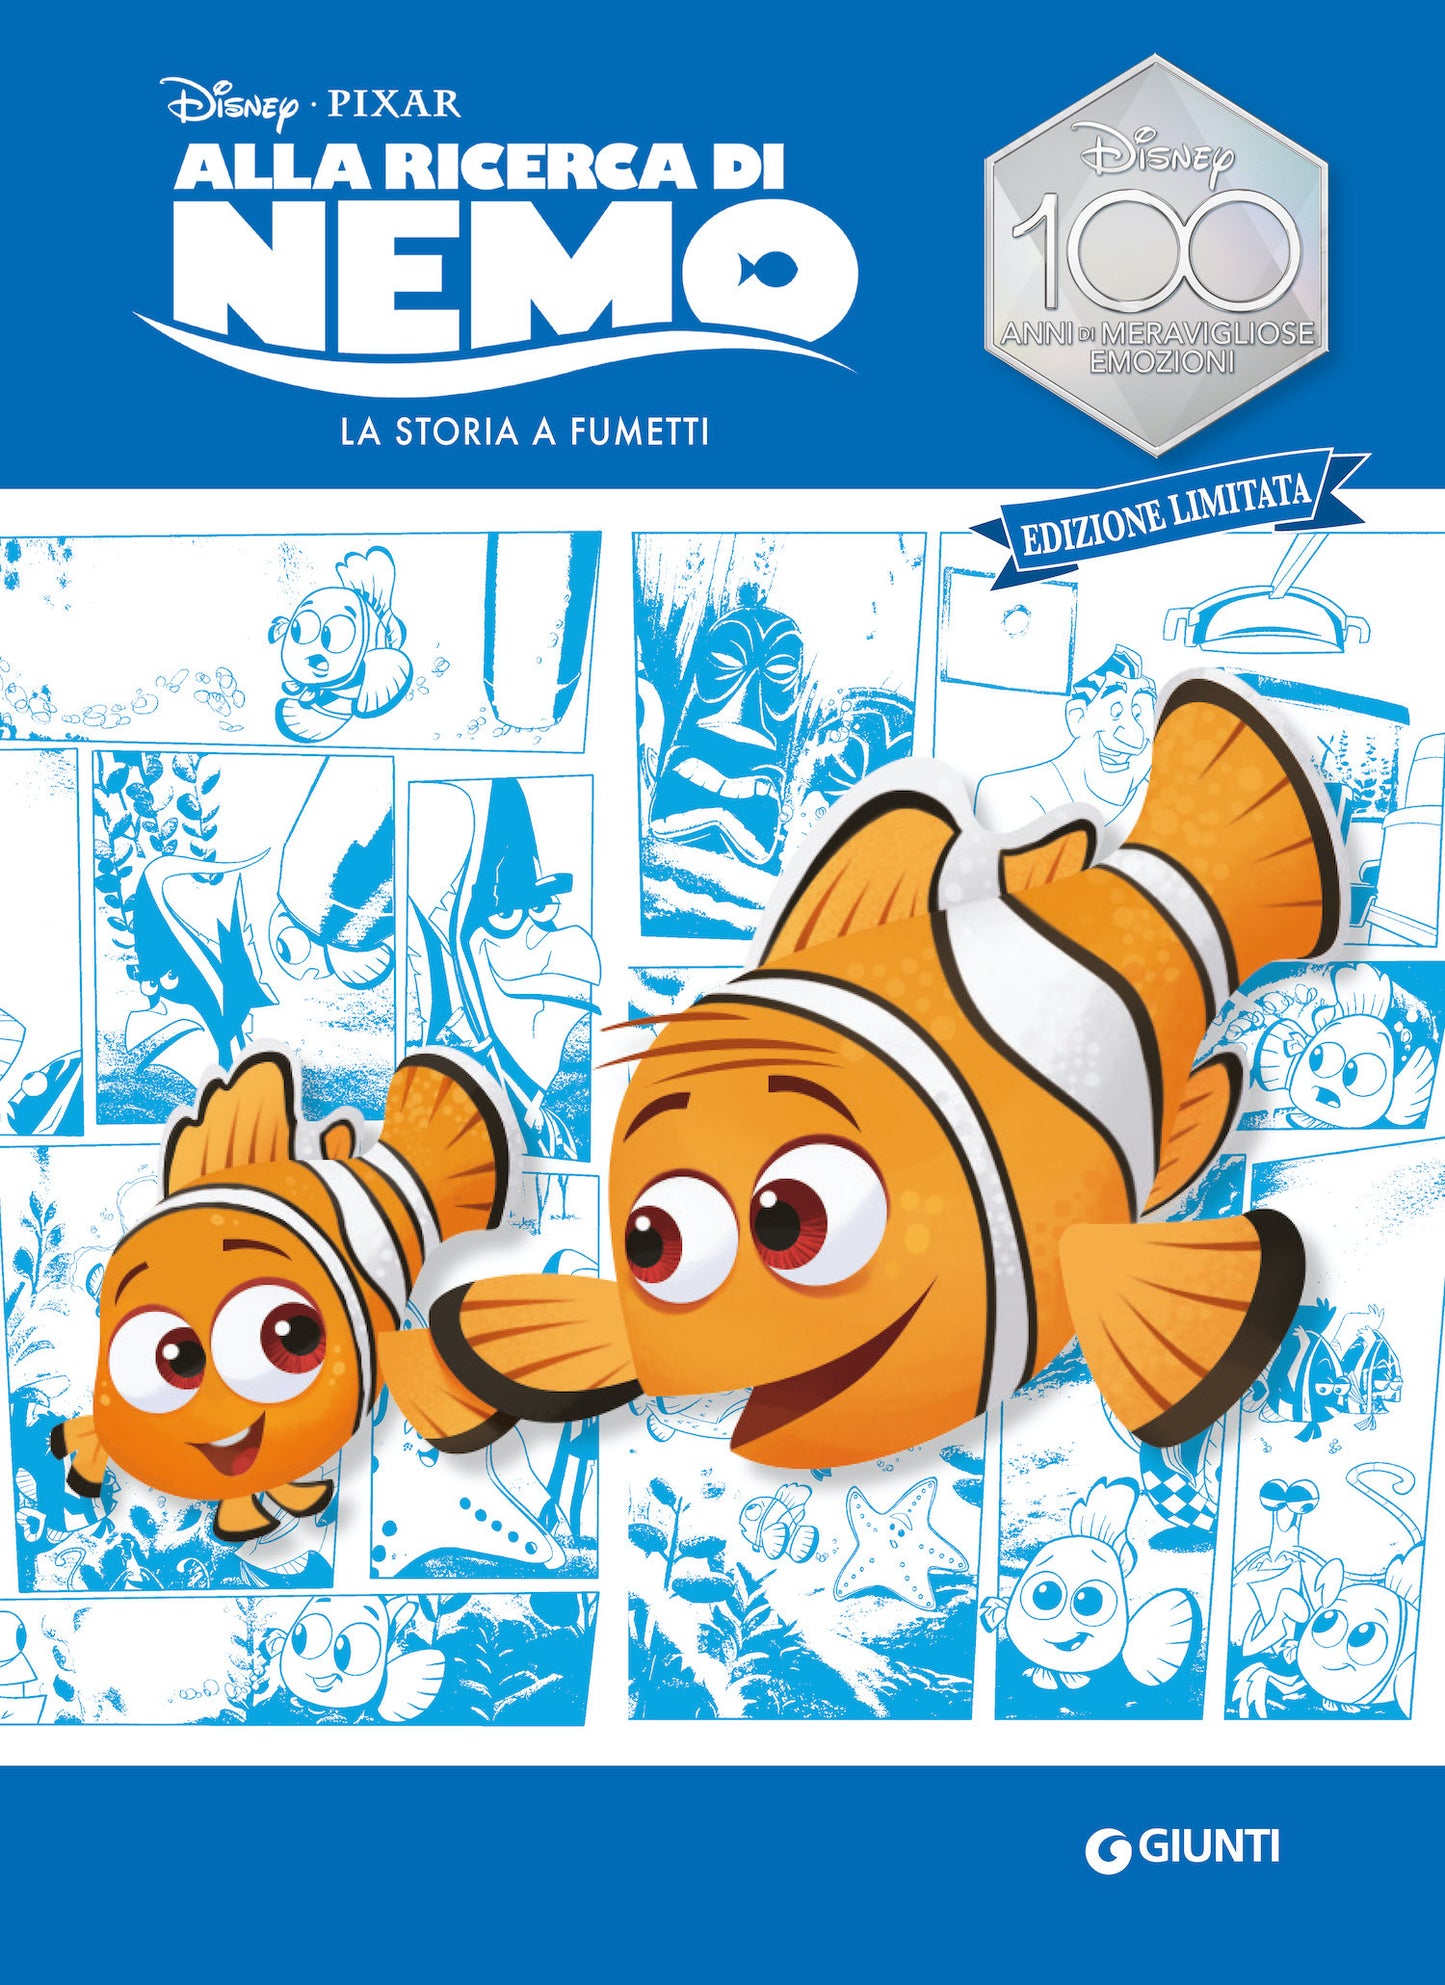 Alla ricerca di Nemo La storia a fumetti Edizione limitata. Disney 100 Anni di meravigliose emozioni